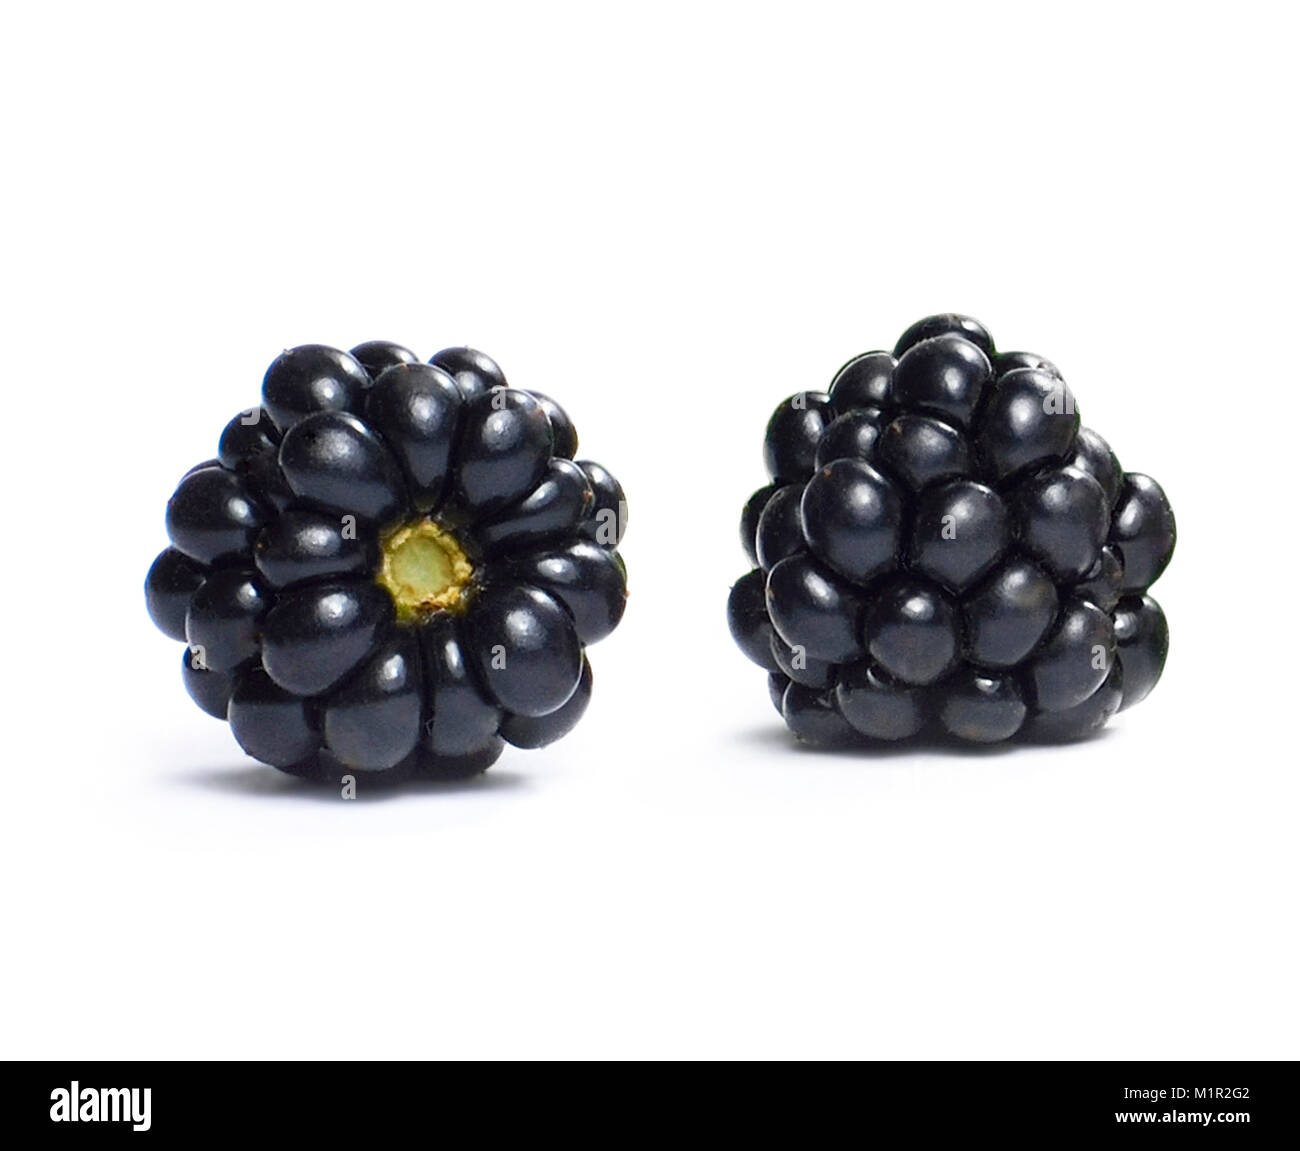 Blackberry bellissimi frutti, isolati su sfondo bianco. More, lucido e freschi frutti di bosco, studio shot. Foto Stock